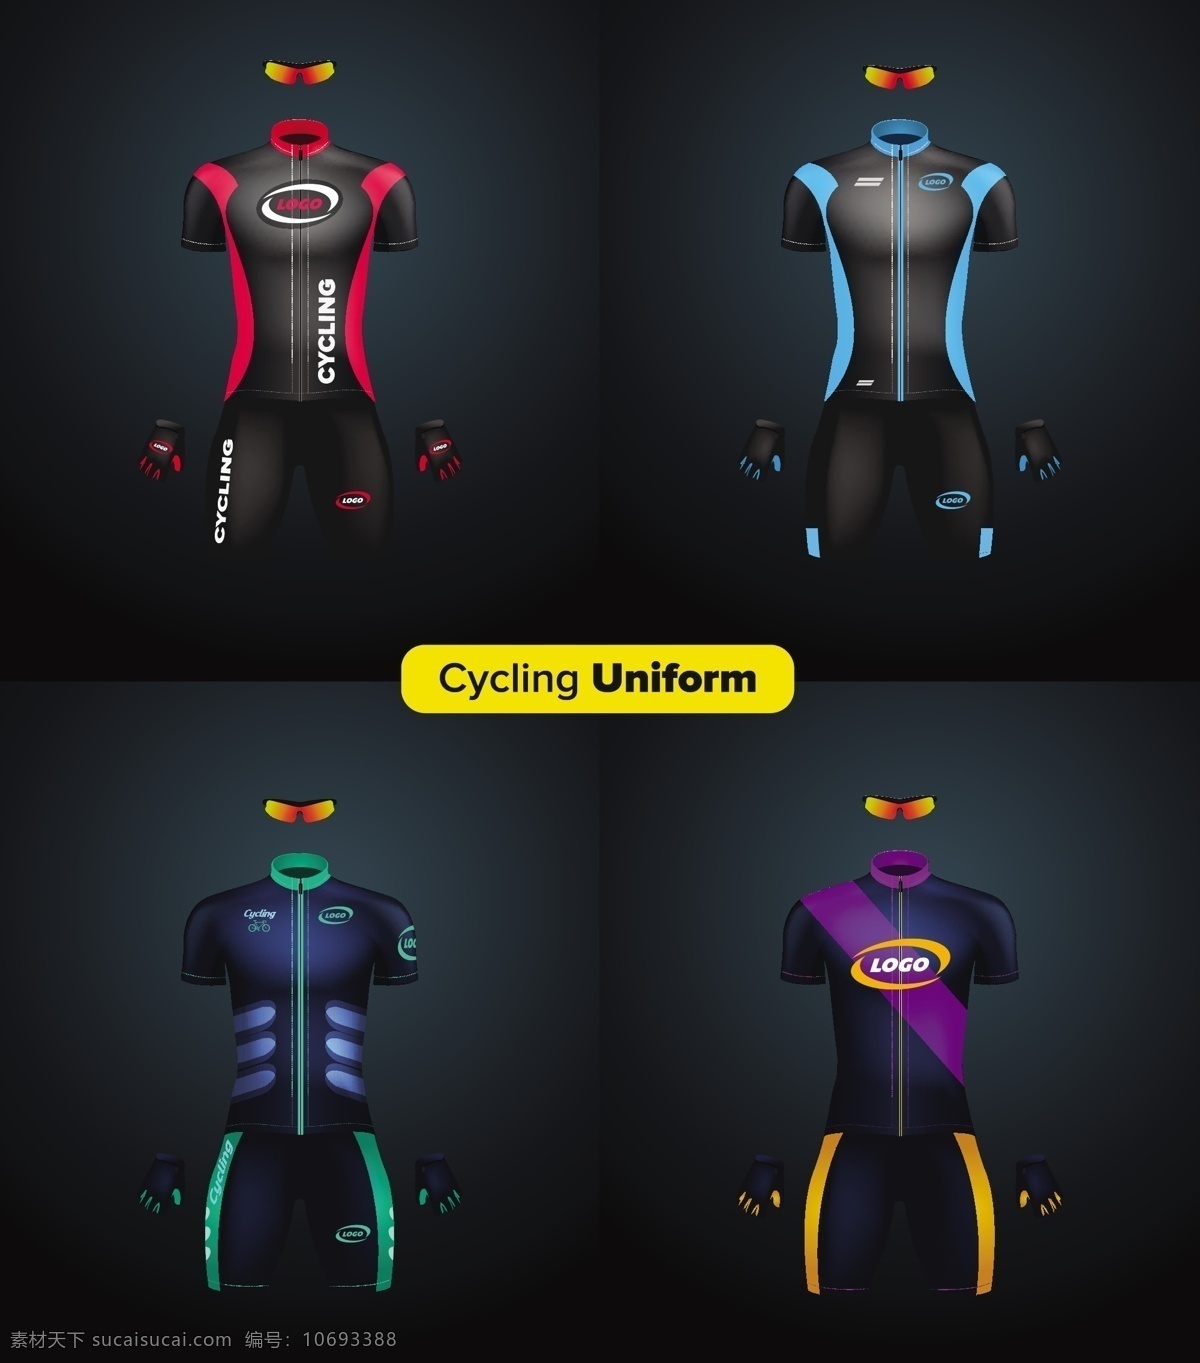 骑行服 运动素材 矢量 运动员 运动 比赛服 服装设计 运动服设计 赛车服 生活百科 体育用品